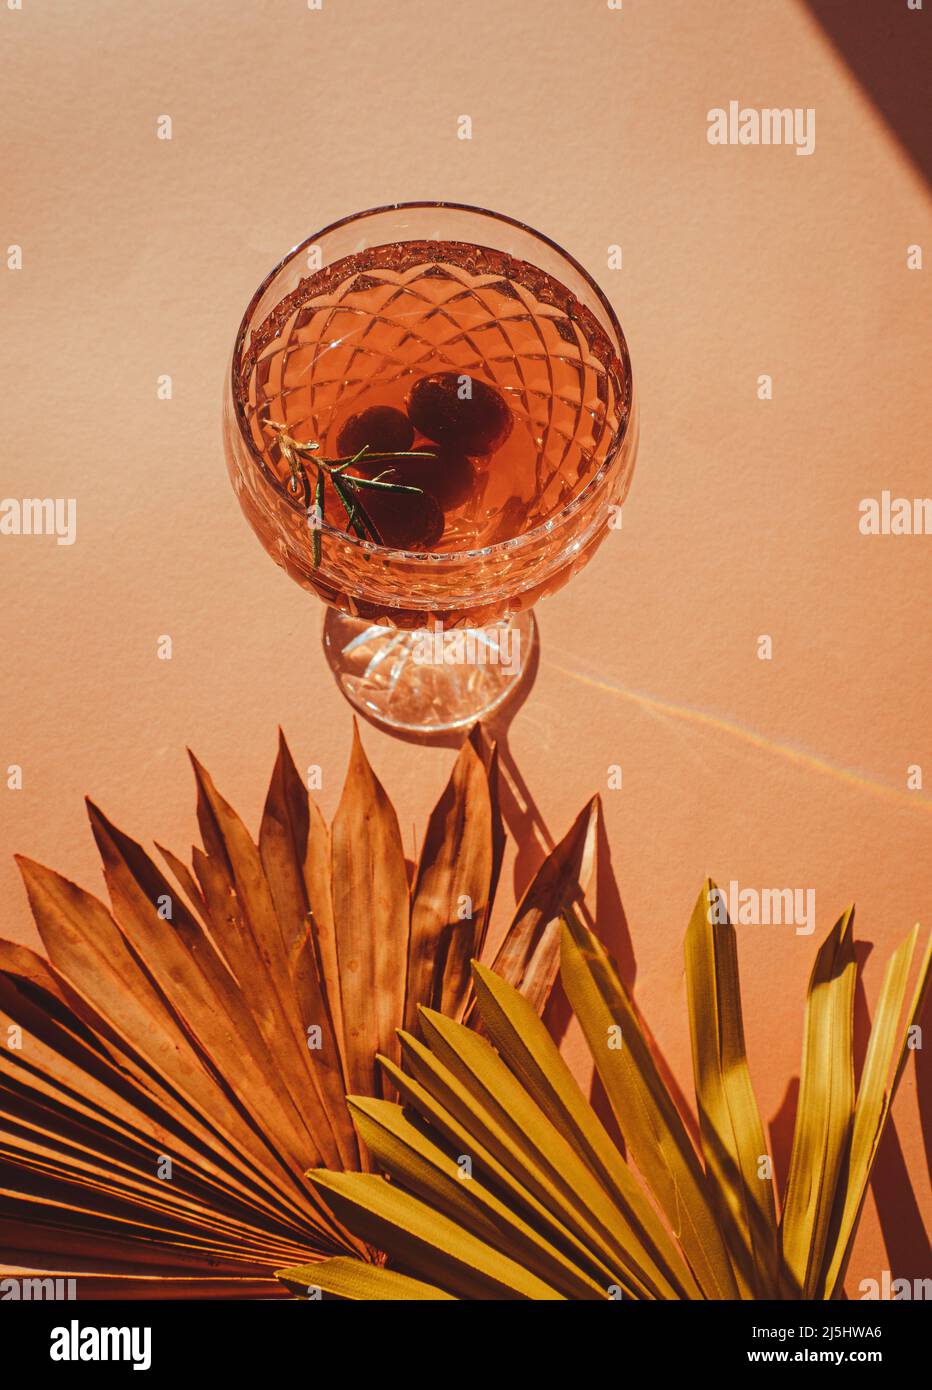 Vino spritzer o gin tonico con uva e ramoscello rosmarino, un gustoso cocktail estivo isolato su sfondo beige boho con foglie di palma secche Foto Stock